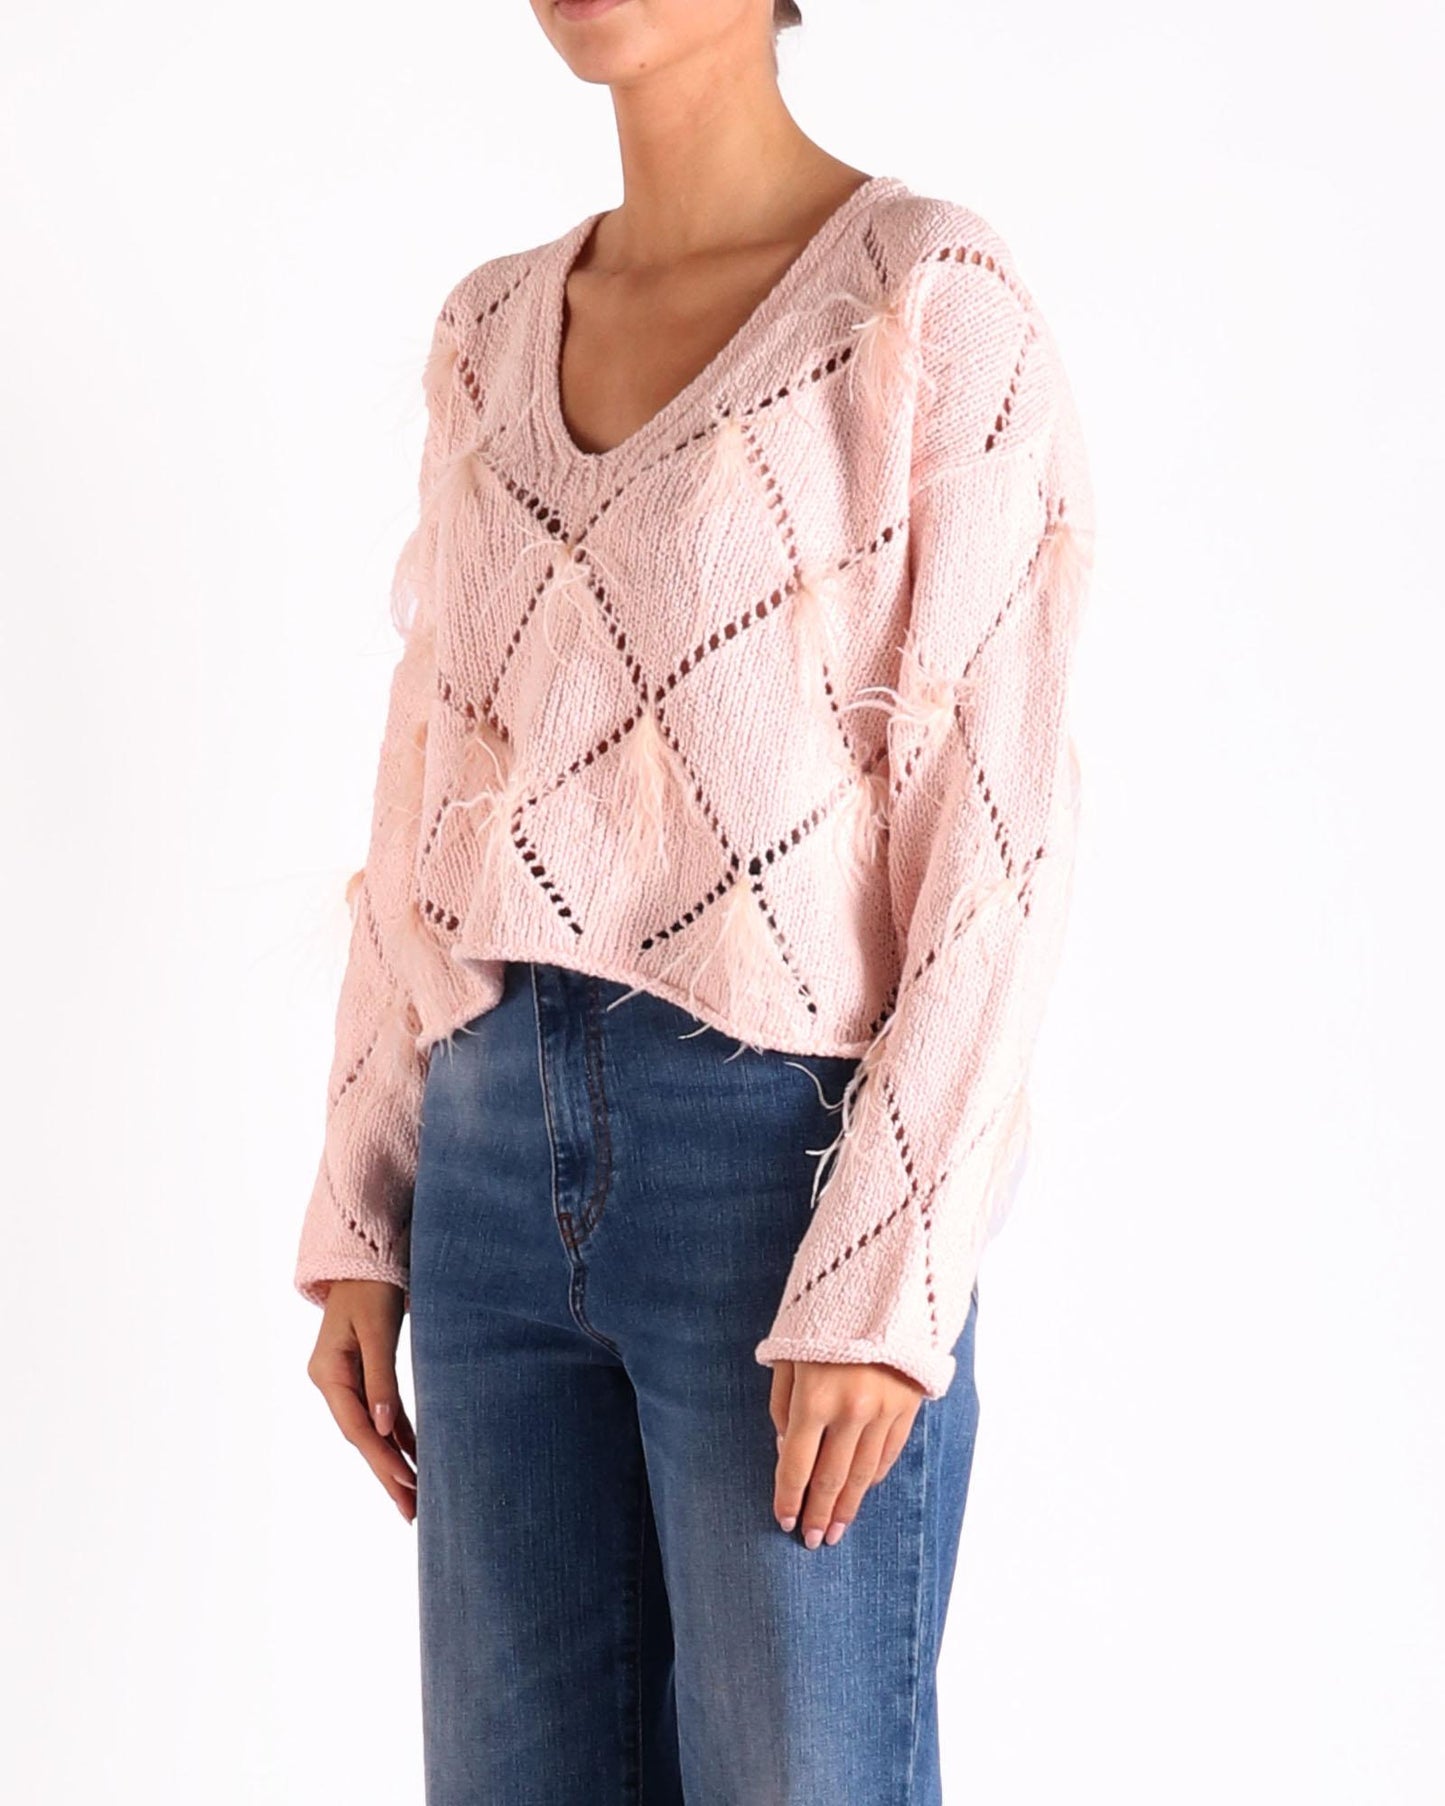 Twinset sweater in de kleur roze